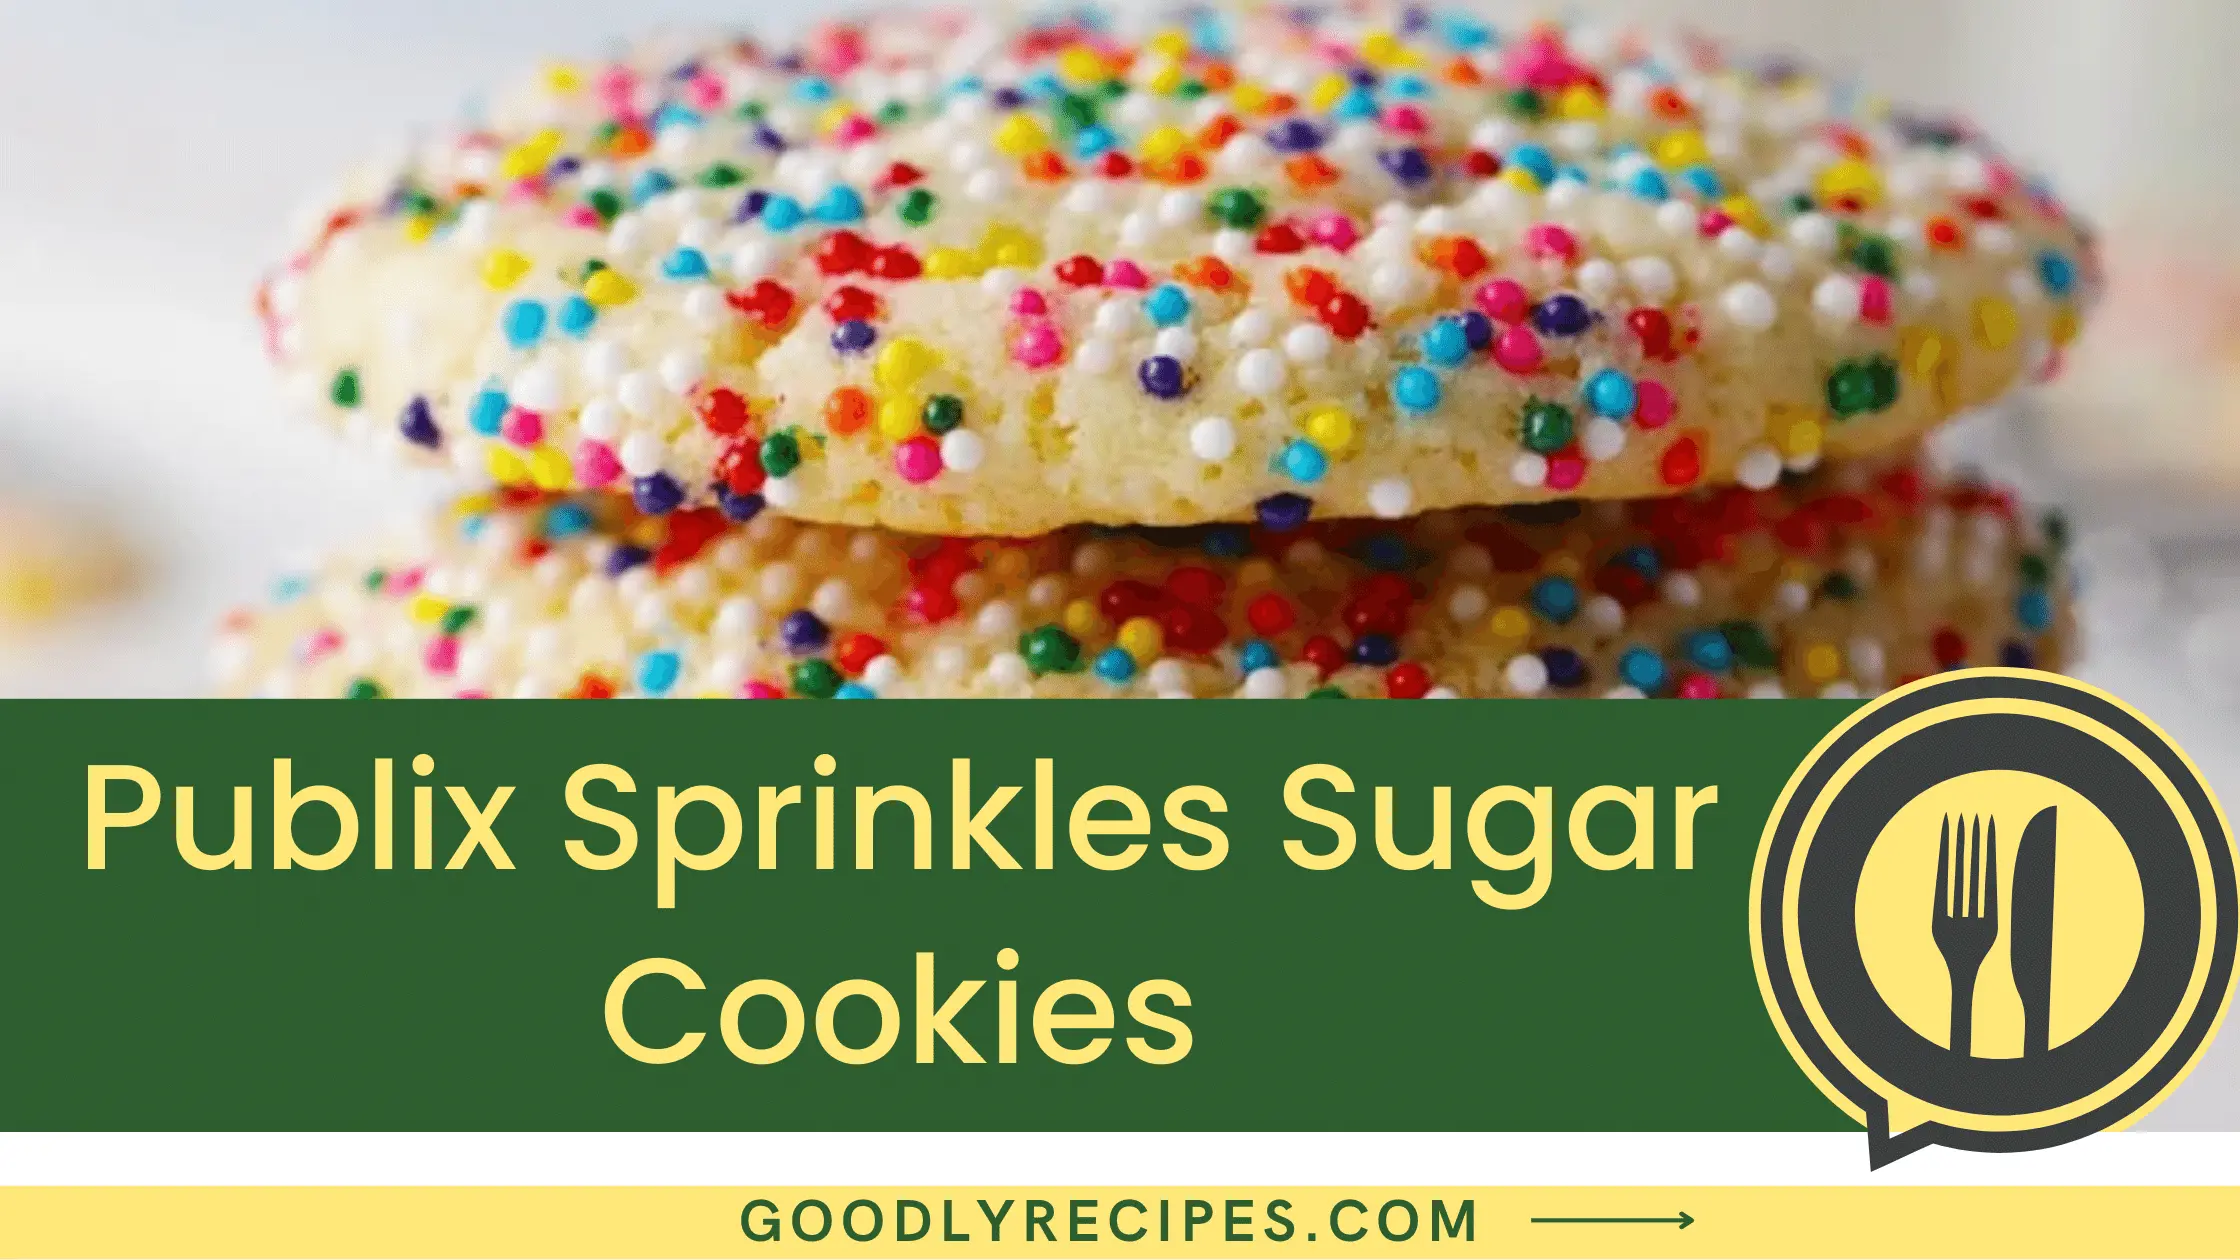 Publix Sprinkles Sugar Cookies - For Food Lovers